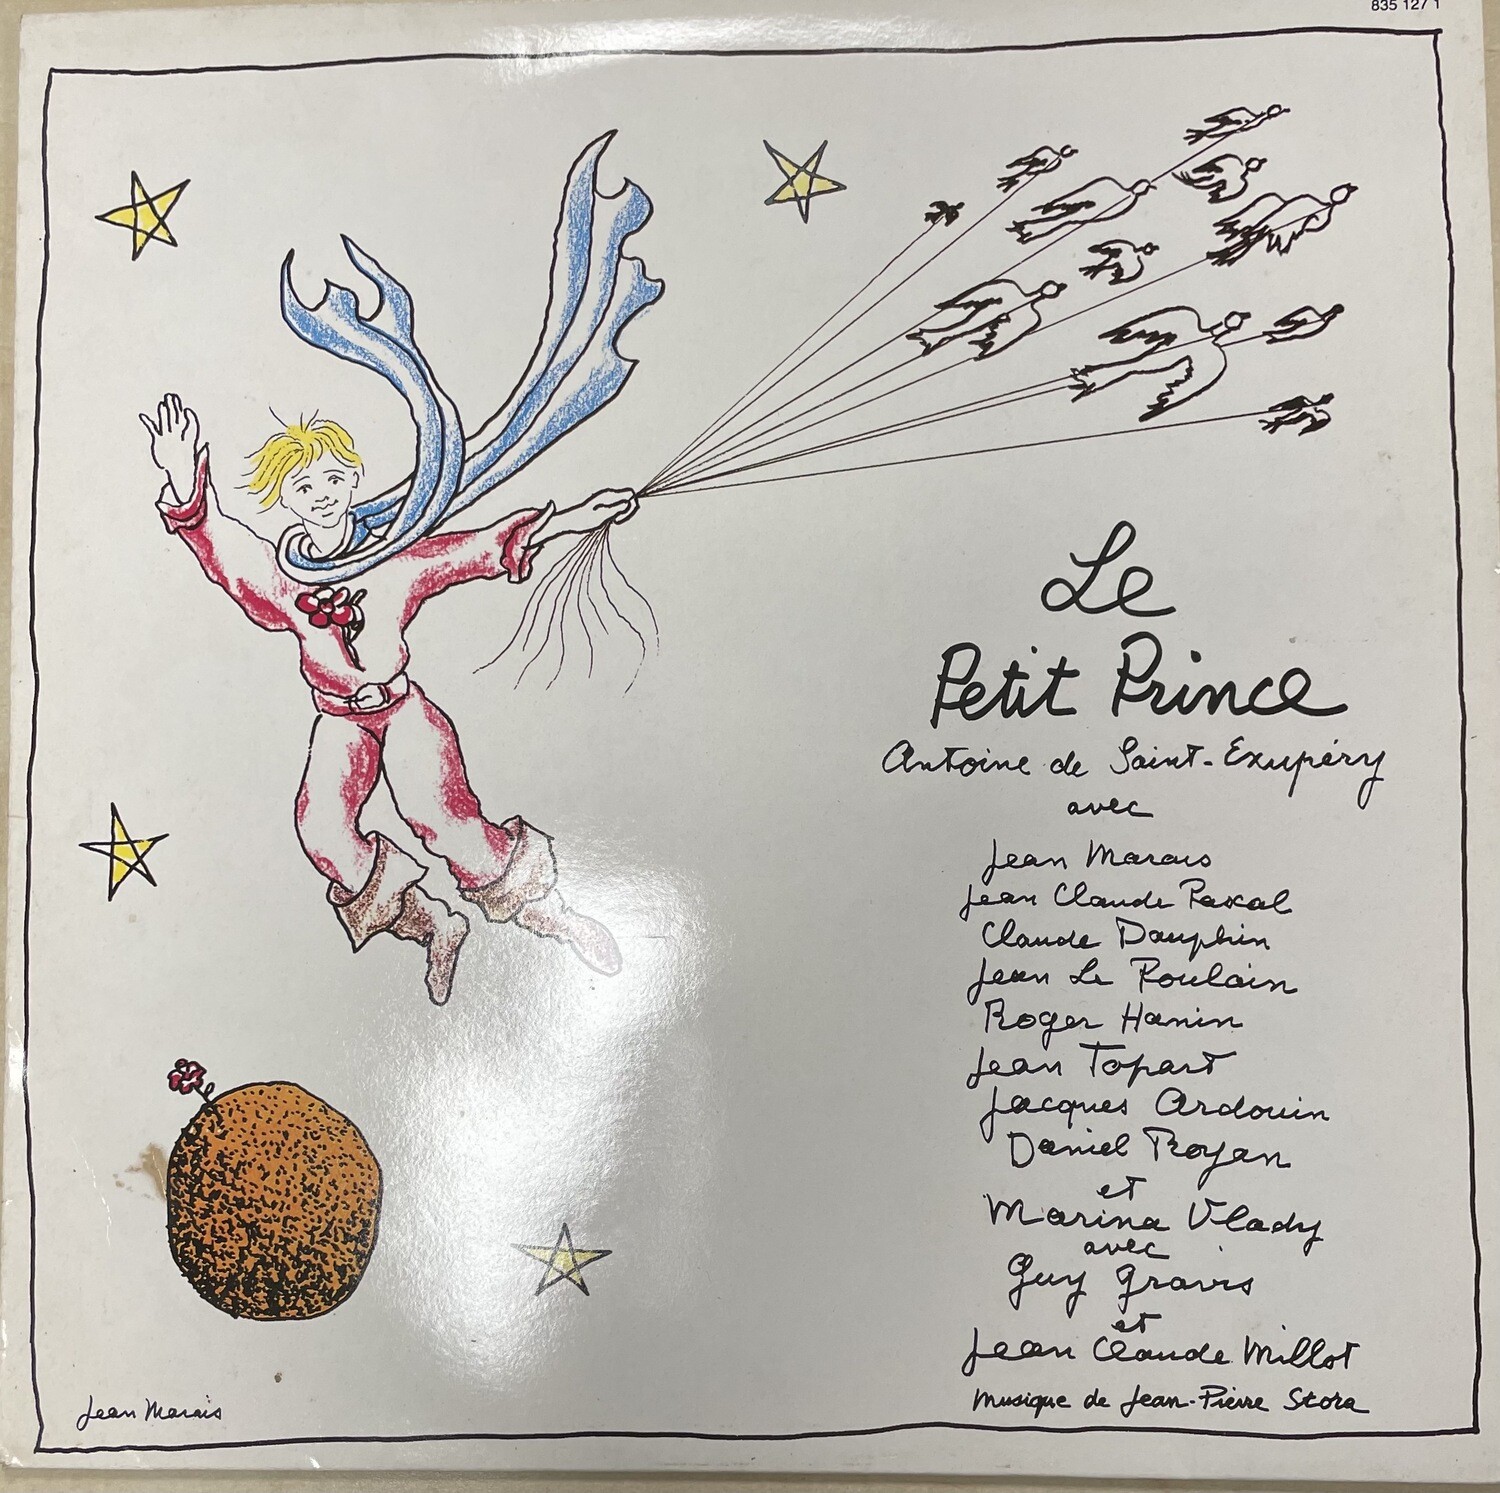 33 tours du "Le Petit Prince"